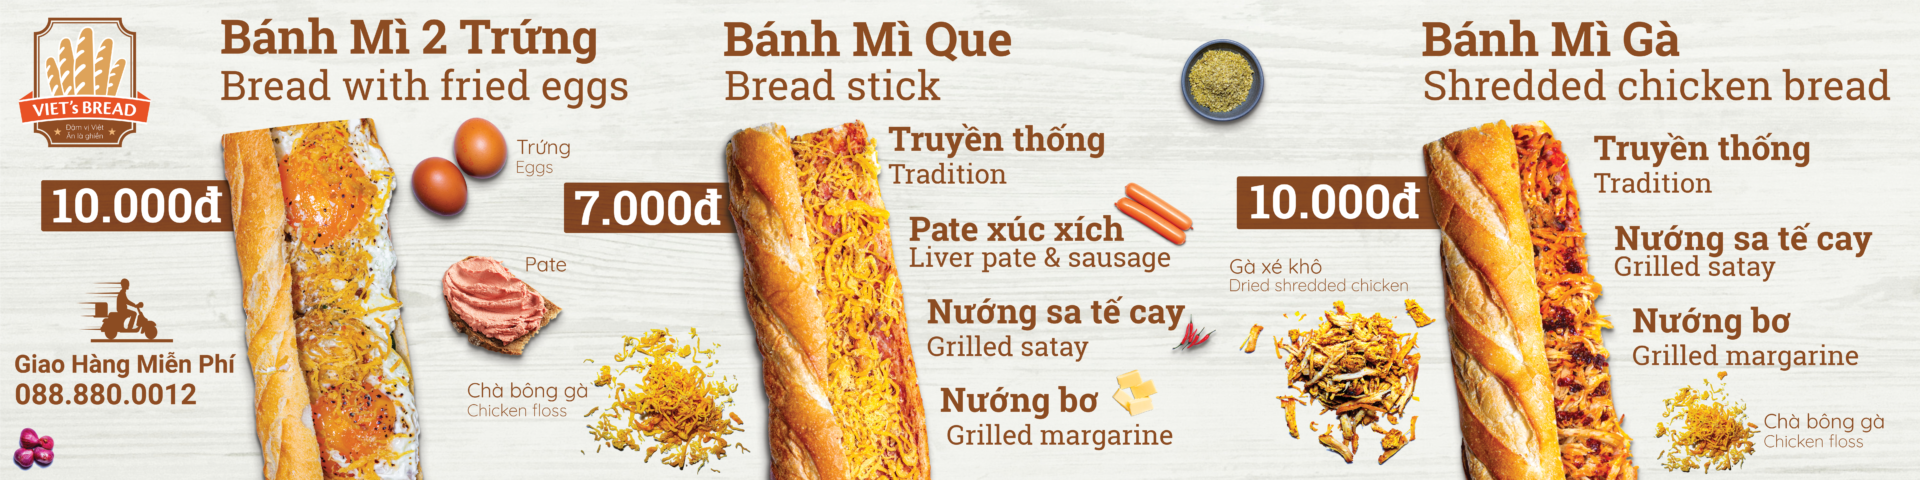 cover image - Doanh thu 100 triệu/tháng từ chuỗi bánh mì Việt